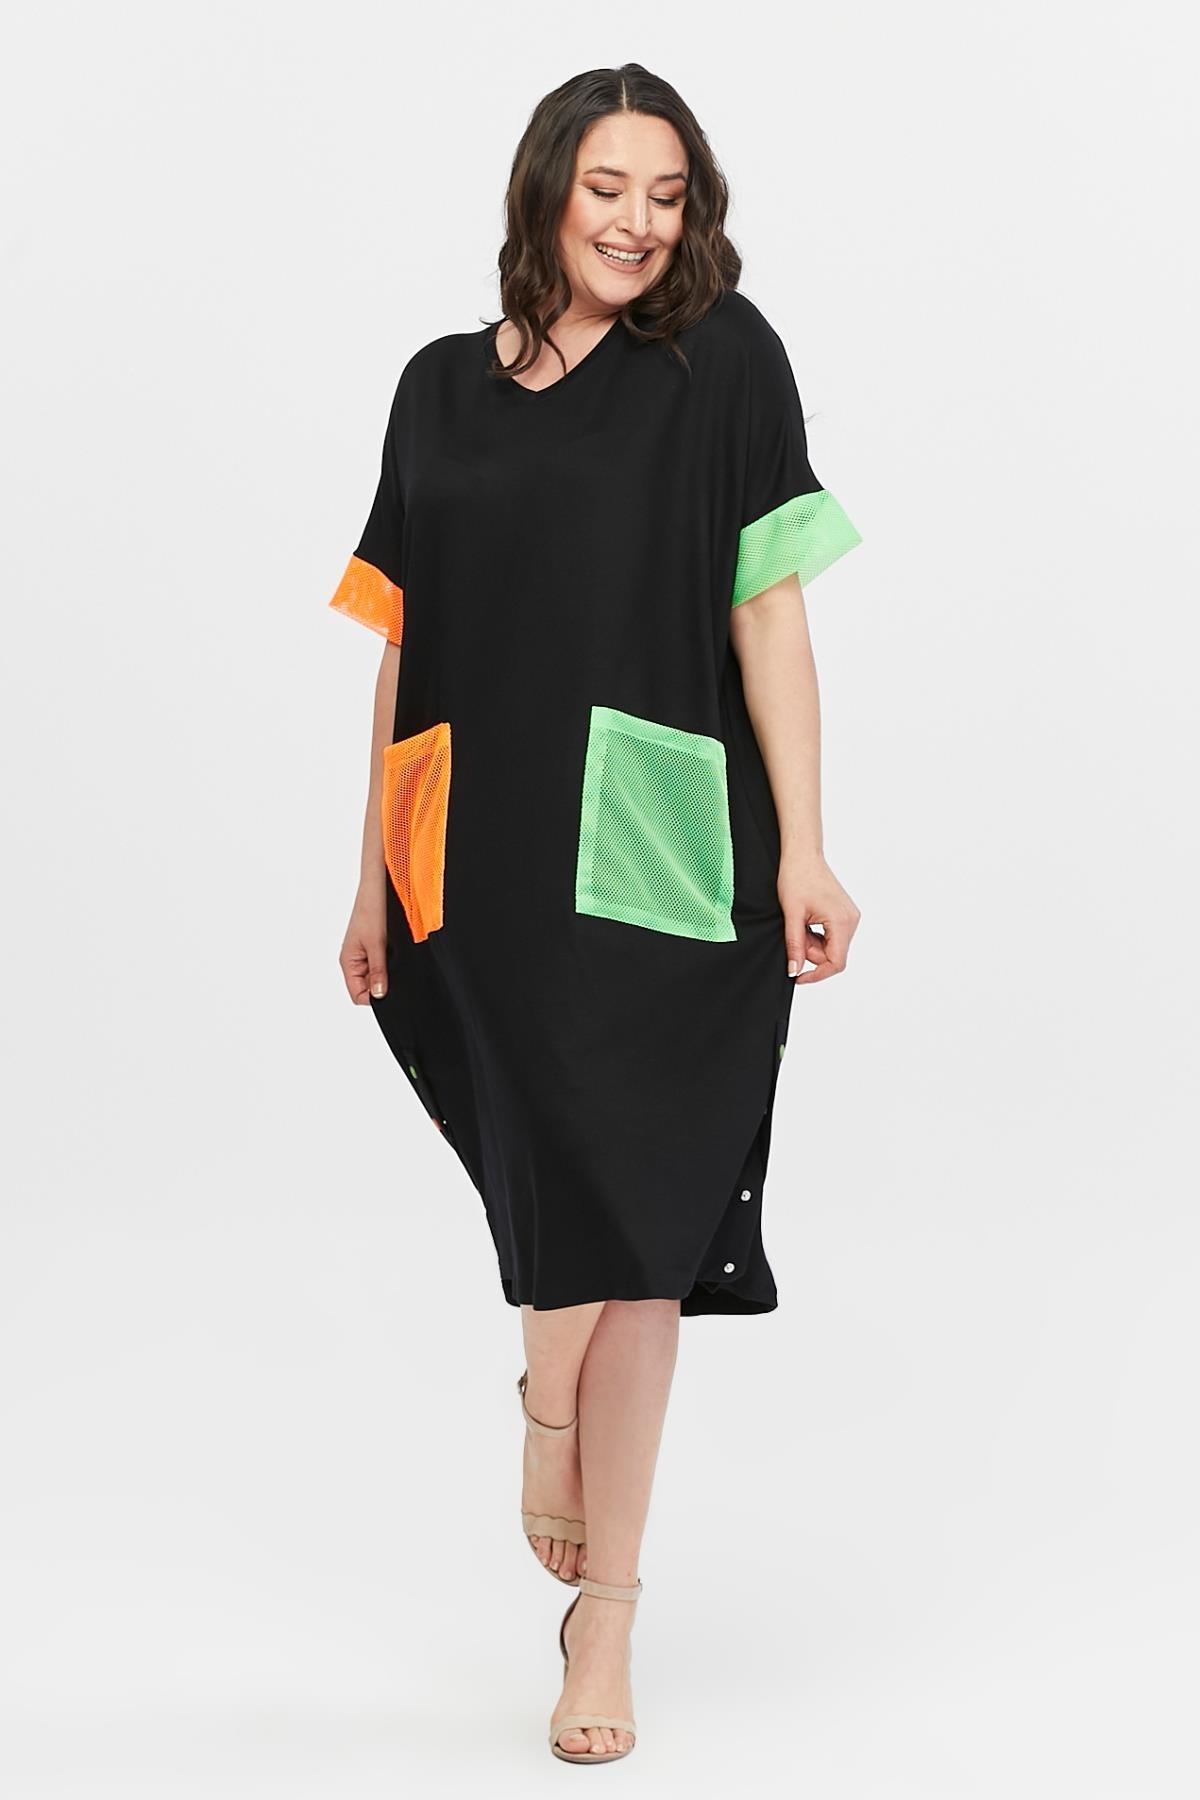 Kadın Büyük Beden Renkli File Cep Detaylı Ekstra Rahat Kalıp Elbise - Siyah